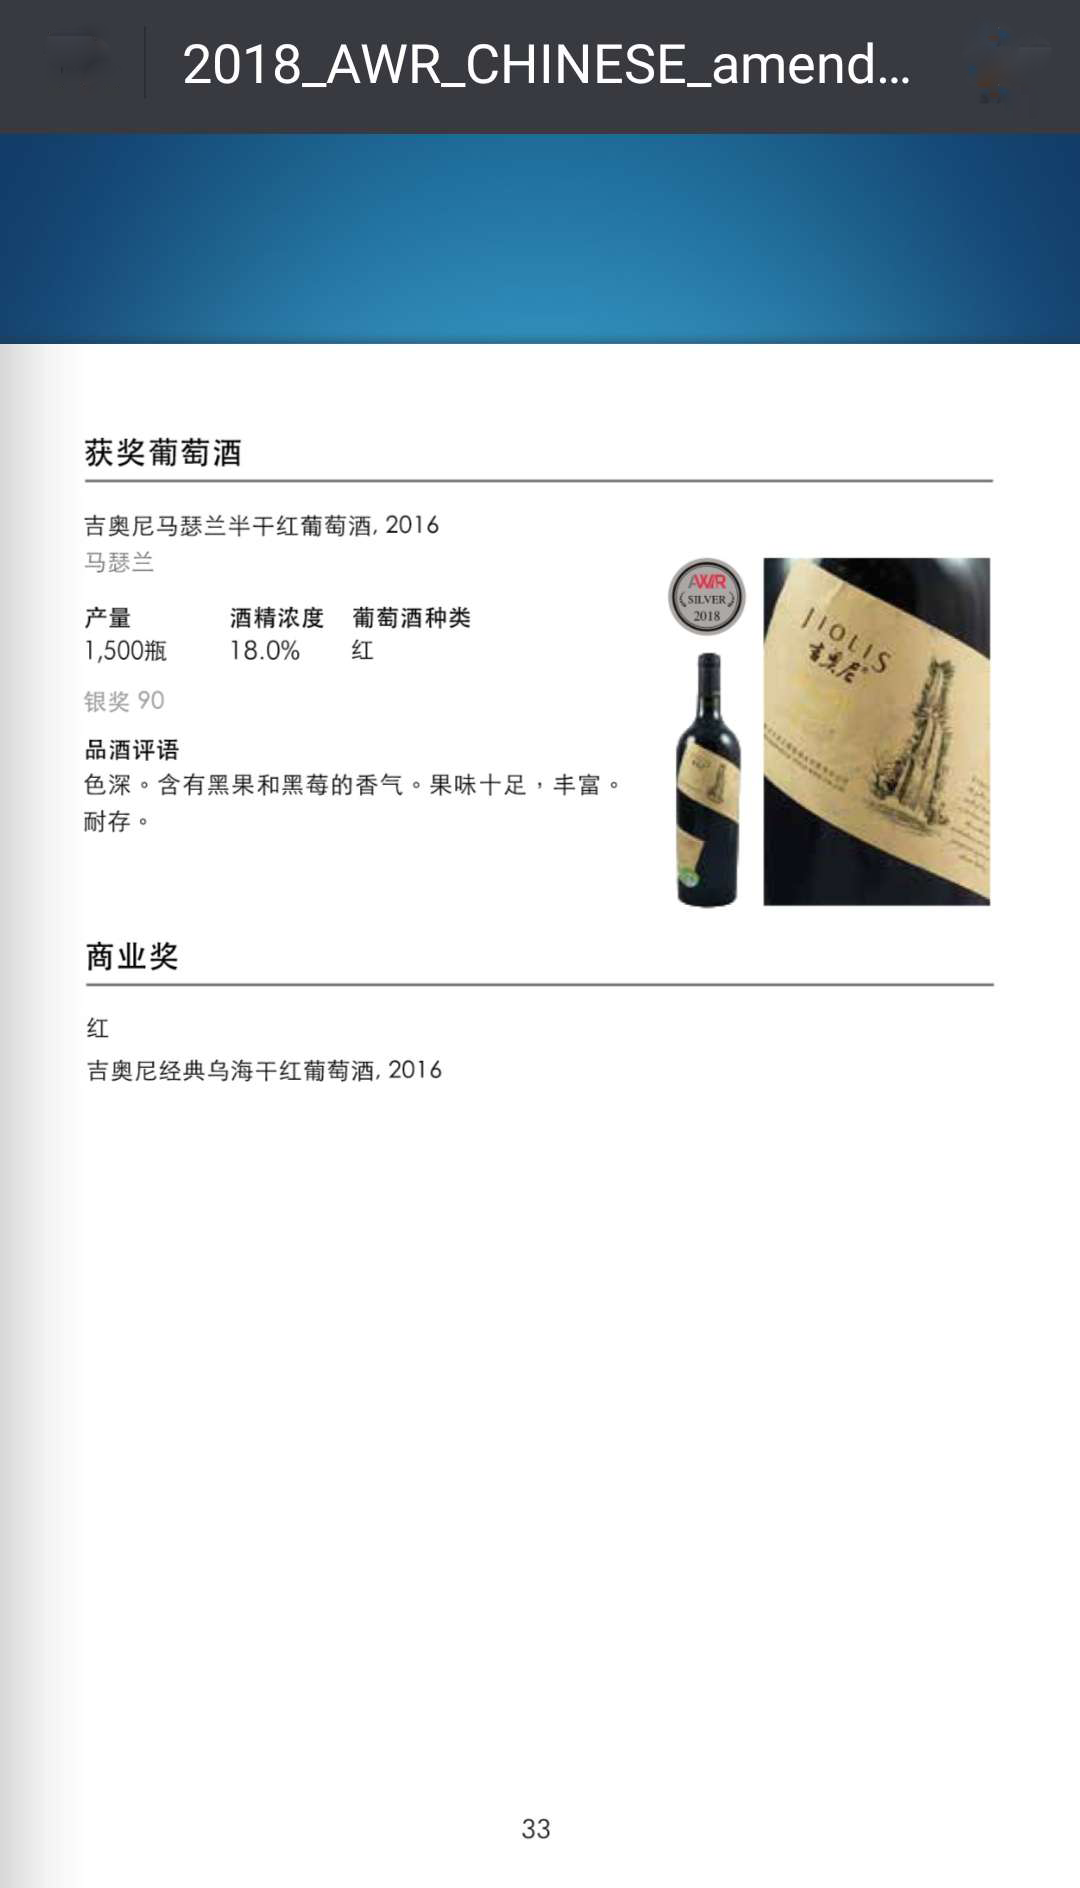 马瑟兰-荣获《亚洲葡萄酒指南》银奖.jpg